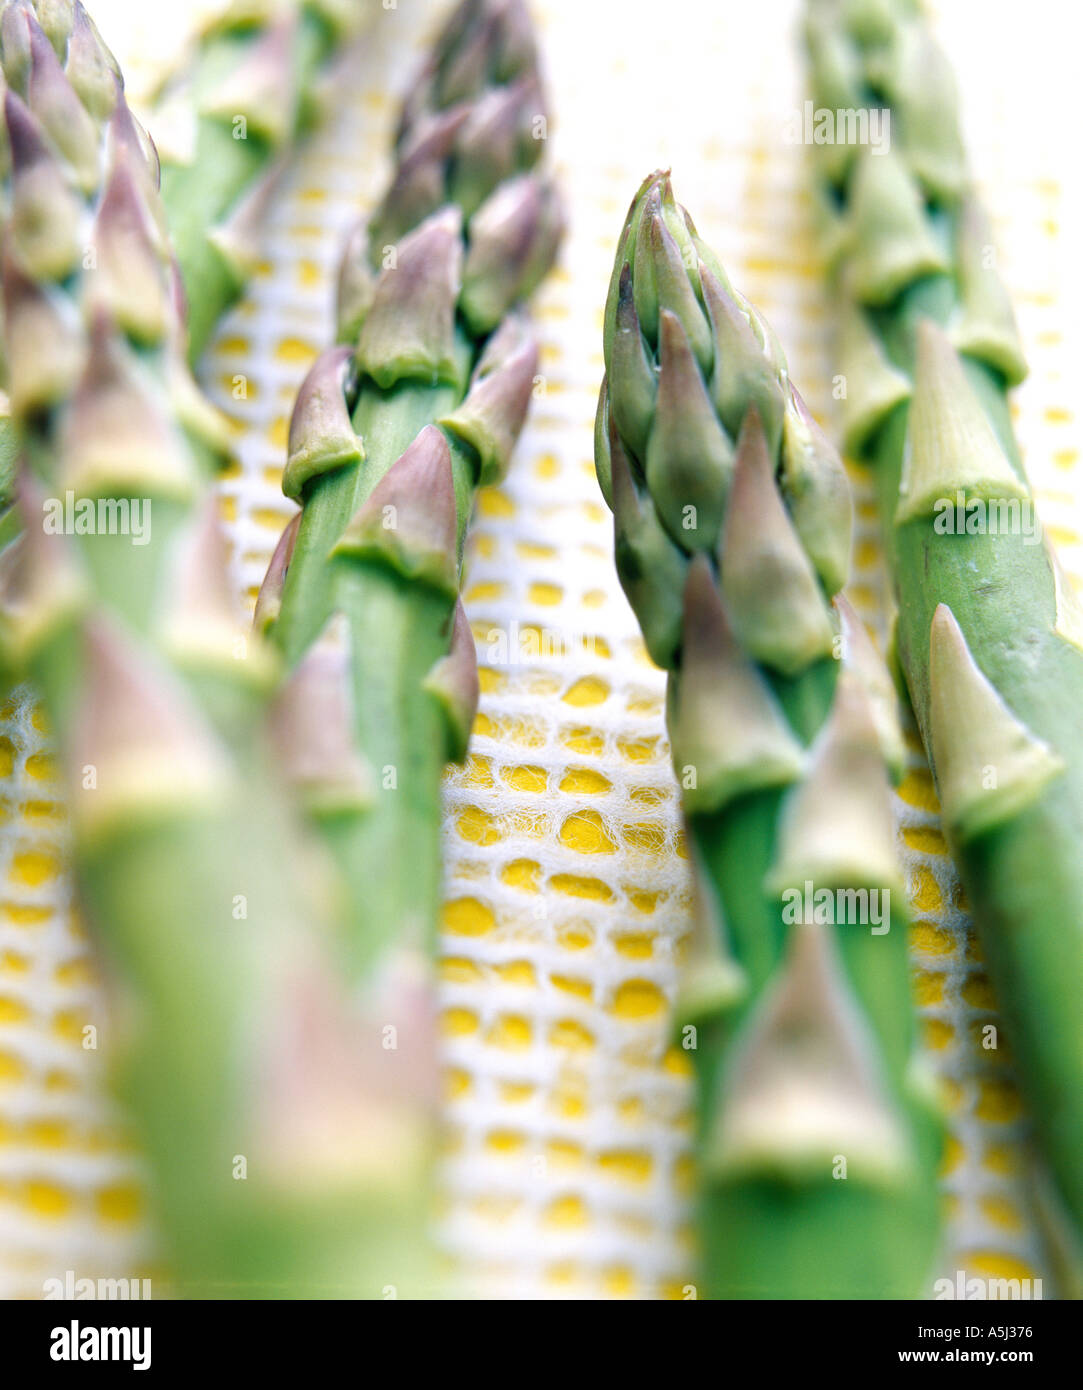 Asparagus tips Stock Photo